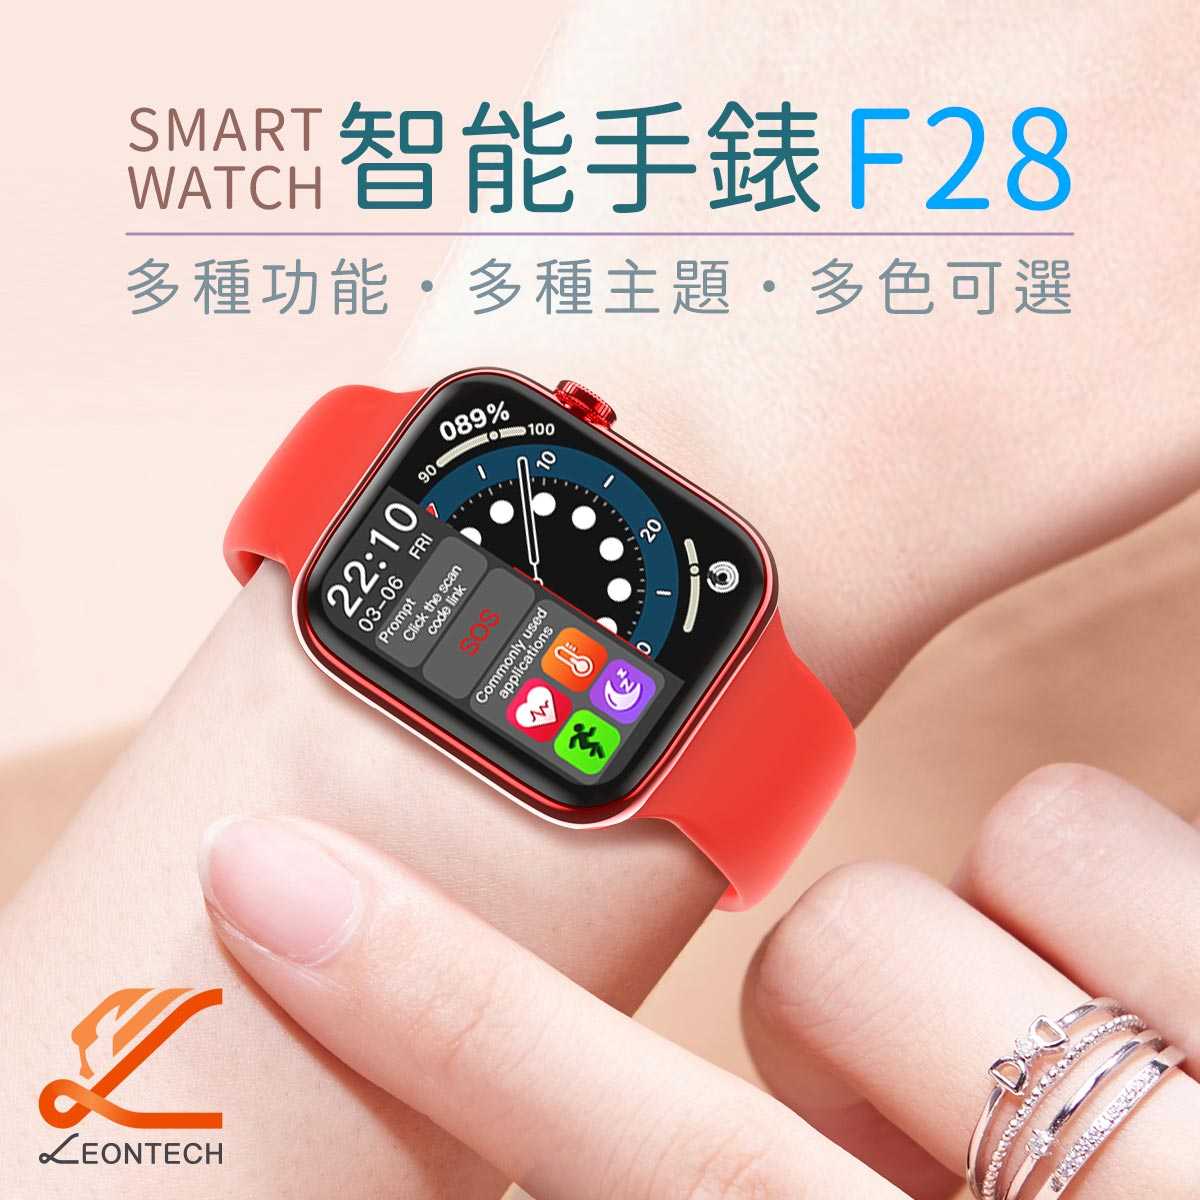 SMART F28智慧手錶 多種運動模式 健康數據 螢幕分割顯示